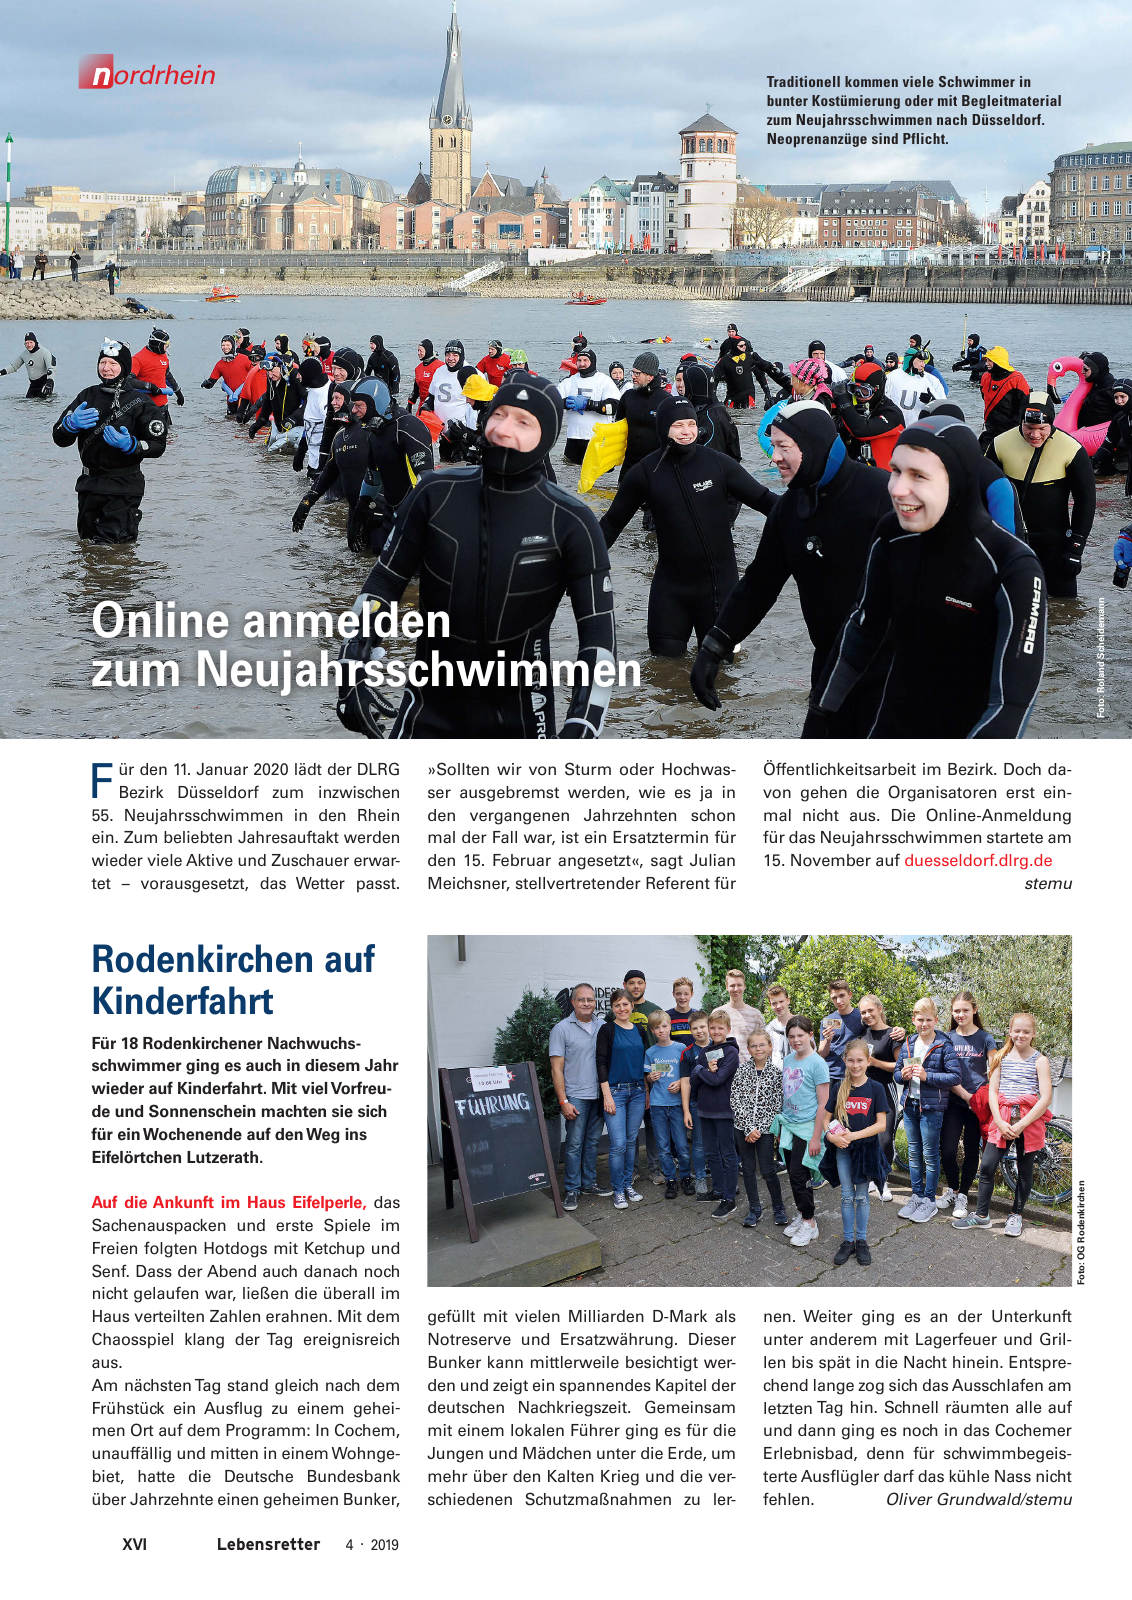 Vorschau Lebensretter 4/2019 -  Nordrhein Regionalausgabe Seite 18